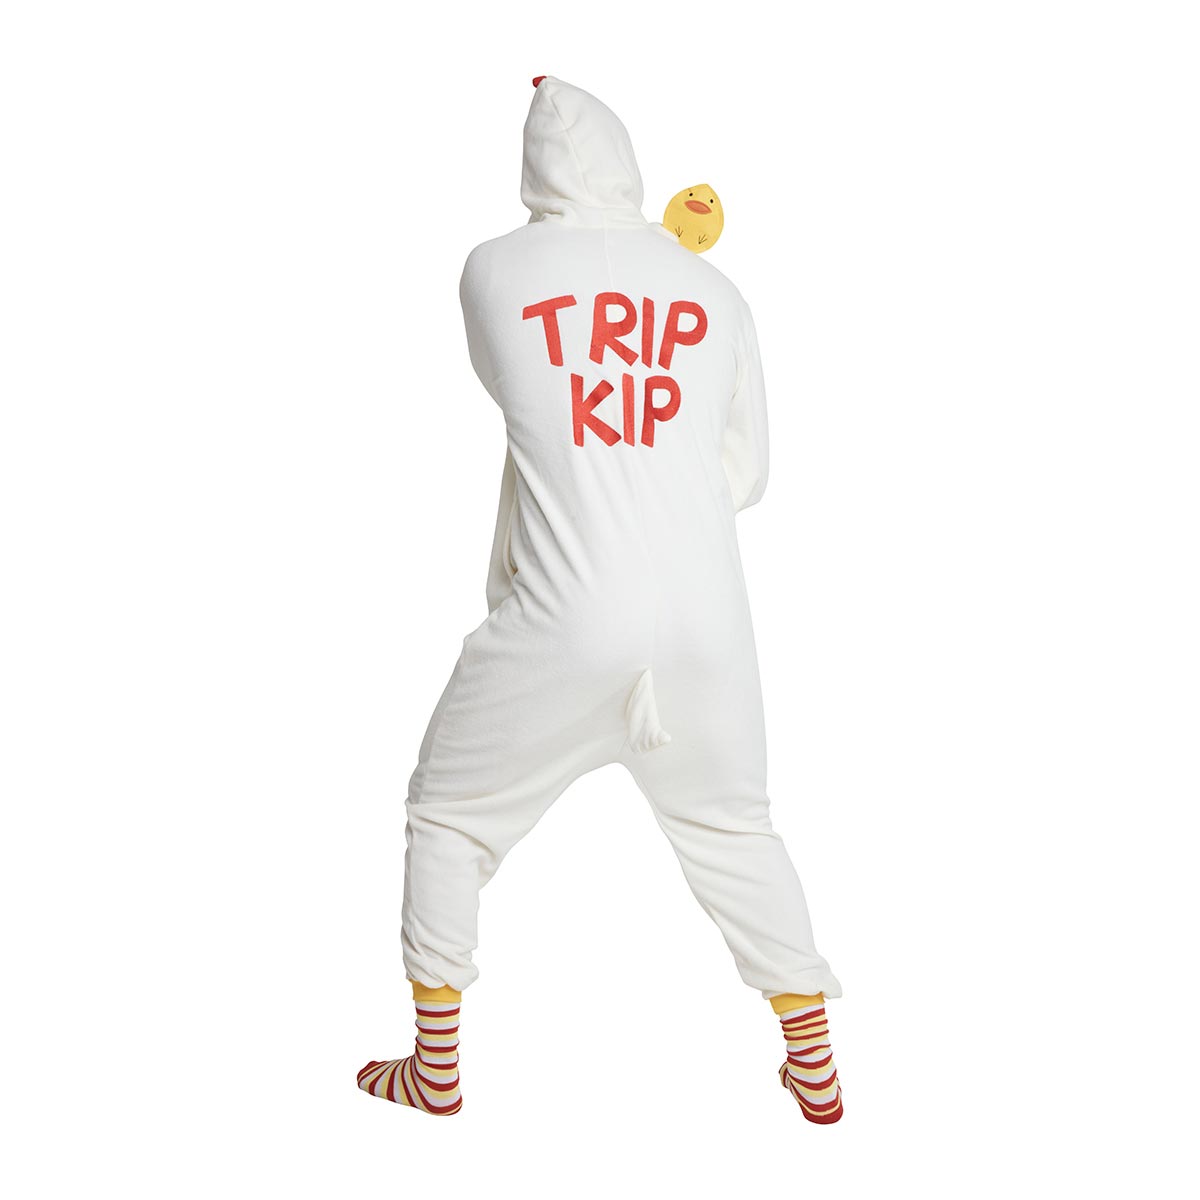 Kip-onesie-trip-kip-achterkant